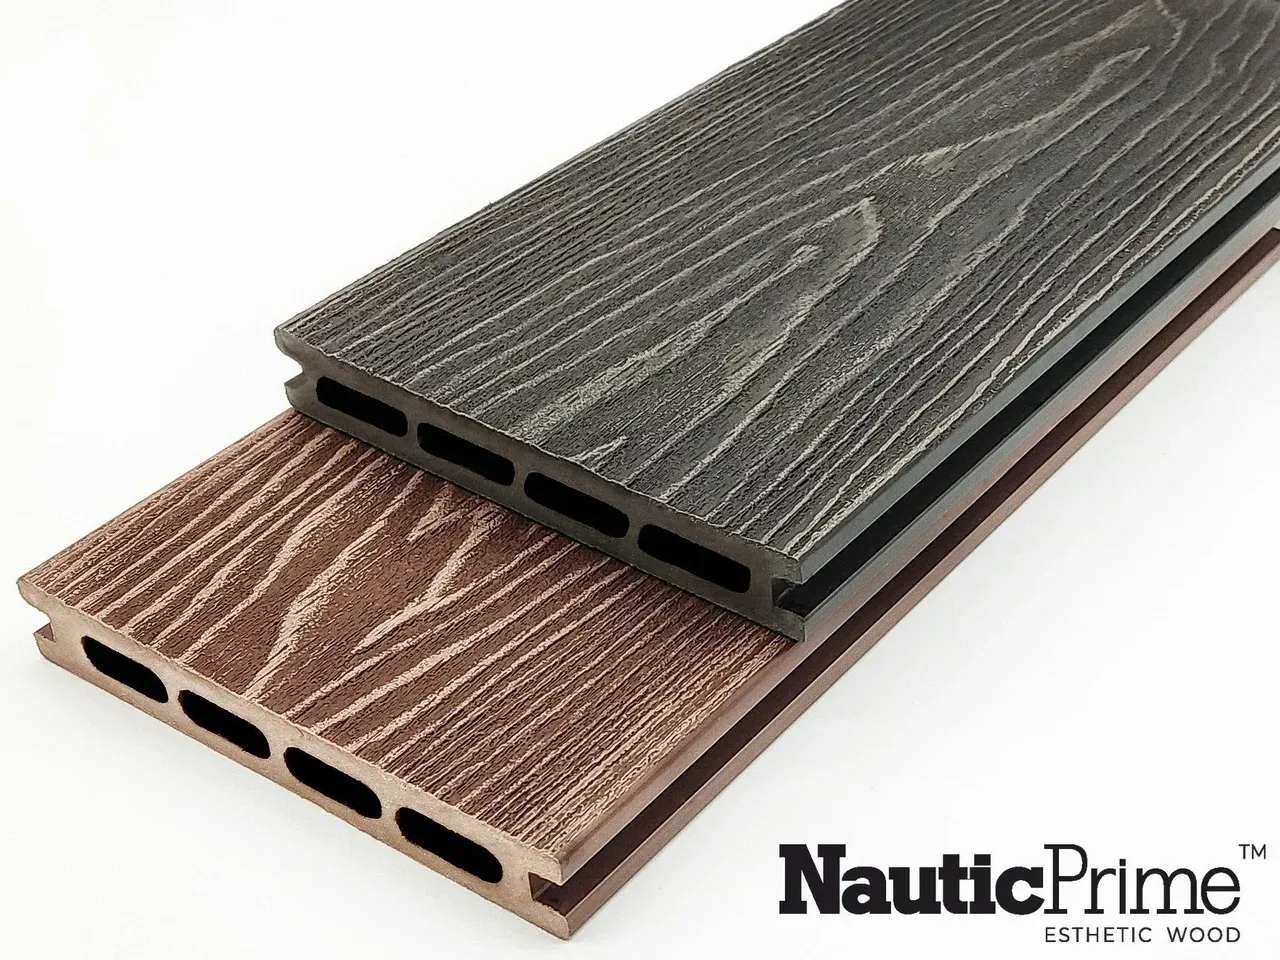 Террасная доска NauticPrime (Middle) Esthetic Wood шовная 150х24х4000 мм венге